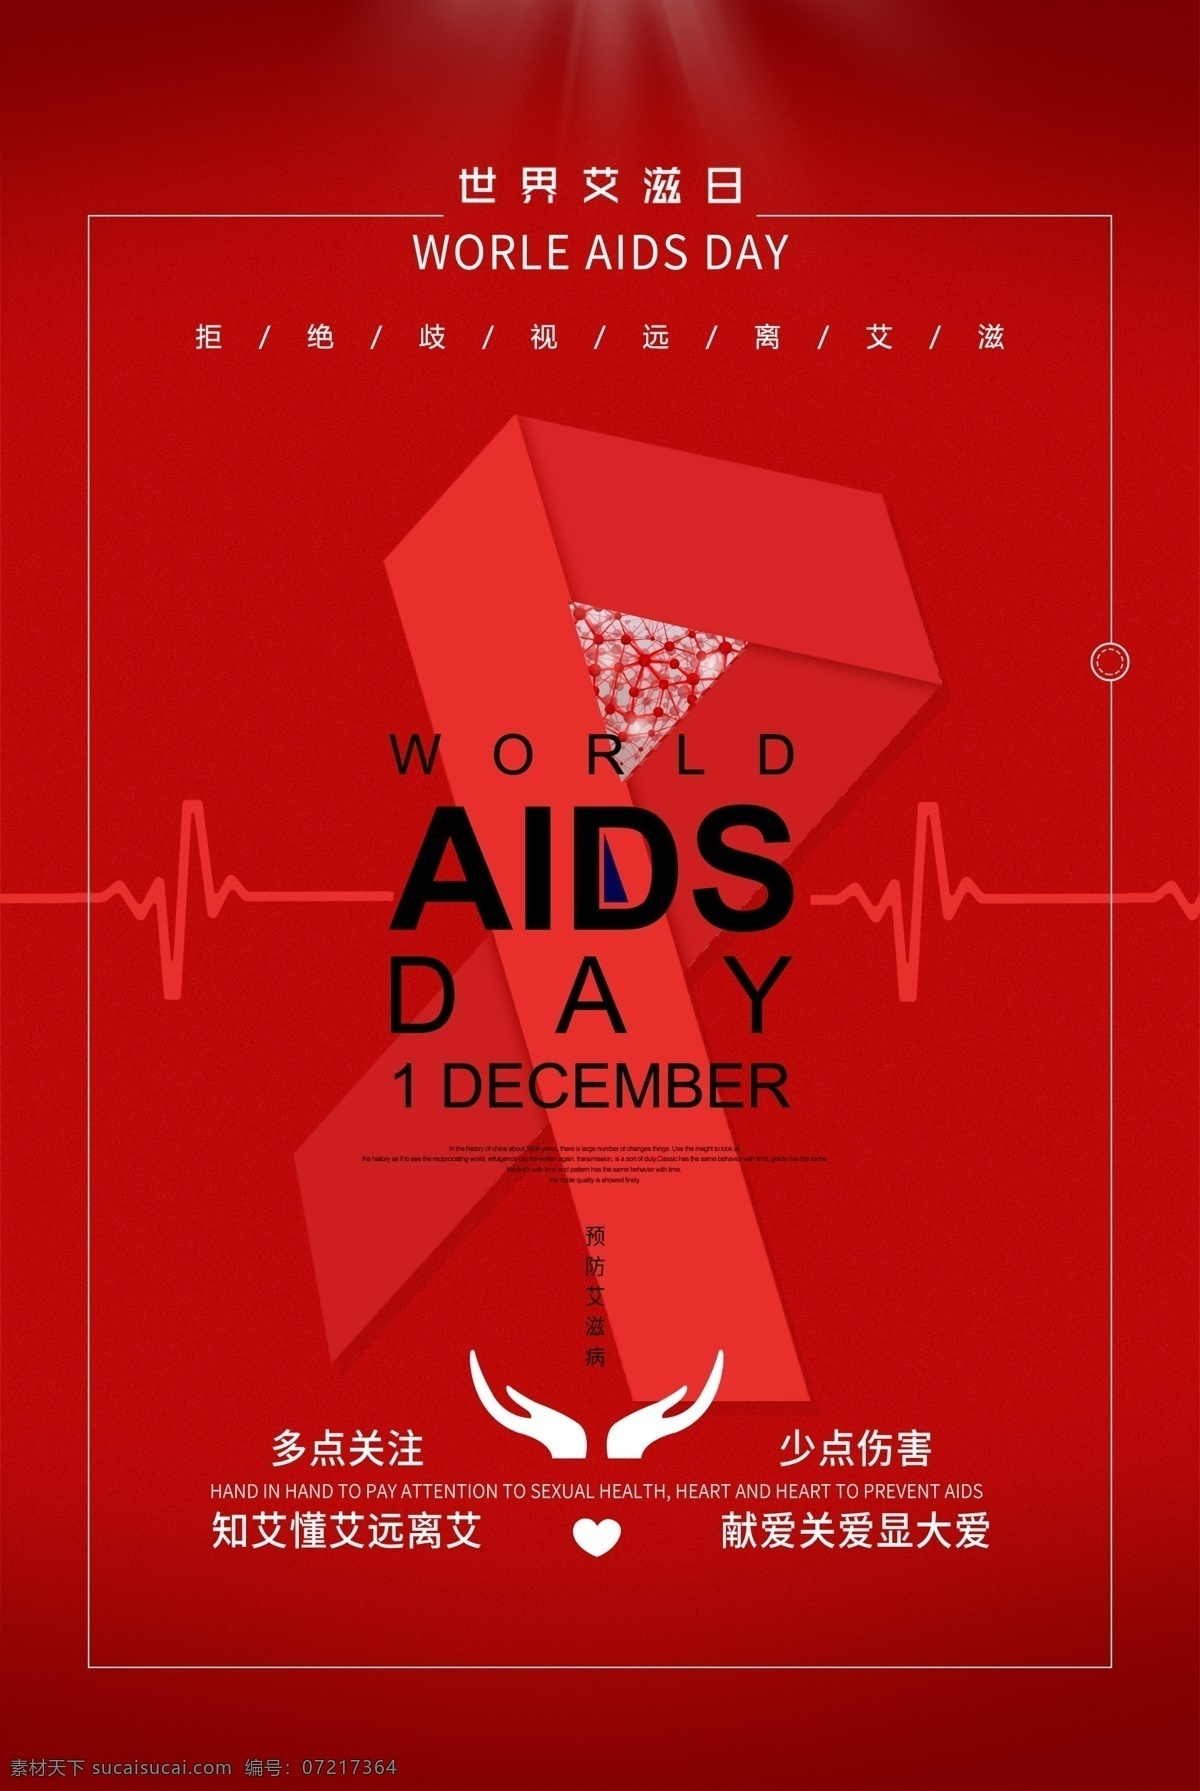 艾滋宣传标语 艾滋病标语 艾滋病模板 艾滋宣传广告 世界艾滋病日 艾滋病海报 艾滋病广告 艾滋病宣传栏 艾滋病板报 艾滋病标志 ppt封面 aids 预防艾滋病 关注艾滋病 艾滋病日 艾滋病展架 艾滋病展板 艾滋两性 两性健康 艾滋病背景 艾滋病宣传 艾滋病画册 艾滋病宣传画 红丝带 公益活动